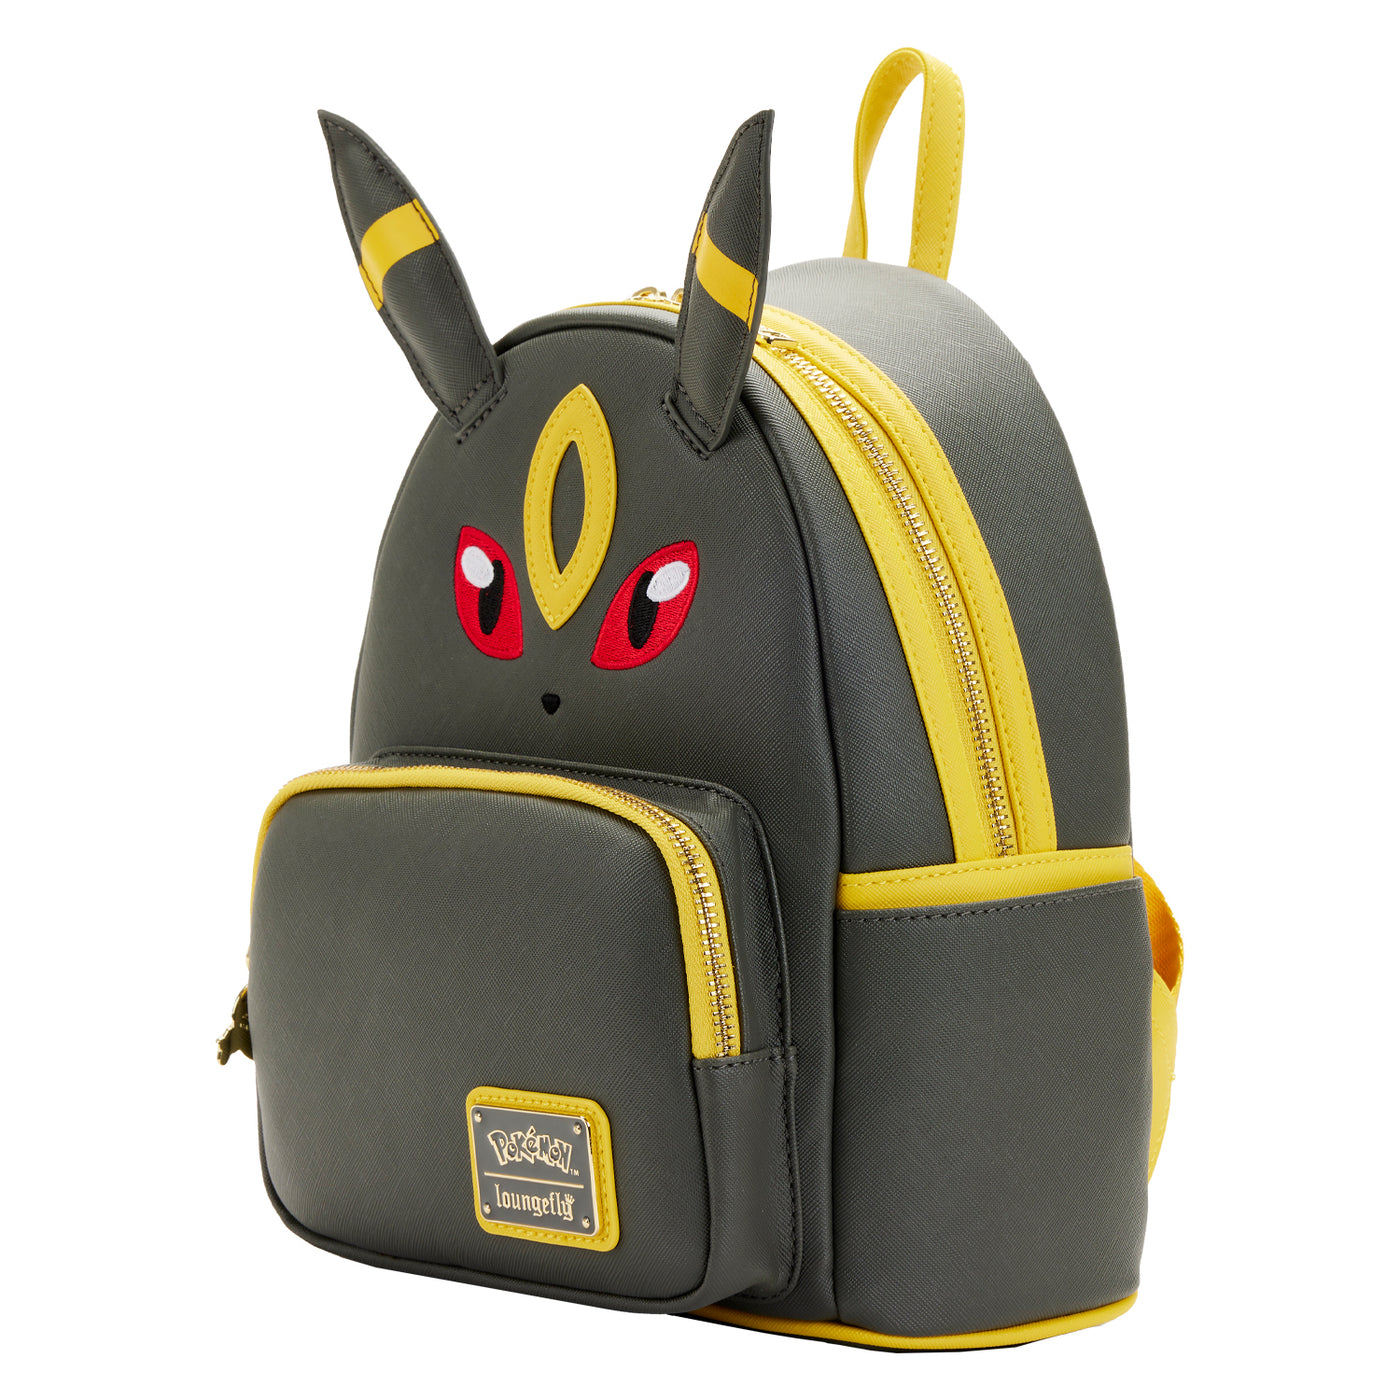 Pokemon Umbreon Cosplay Mini Backpack